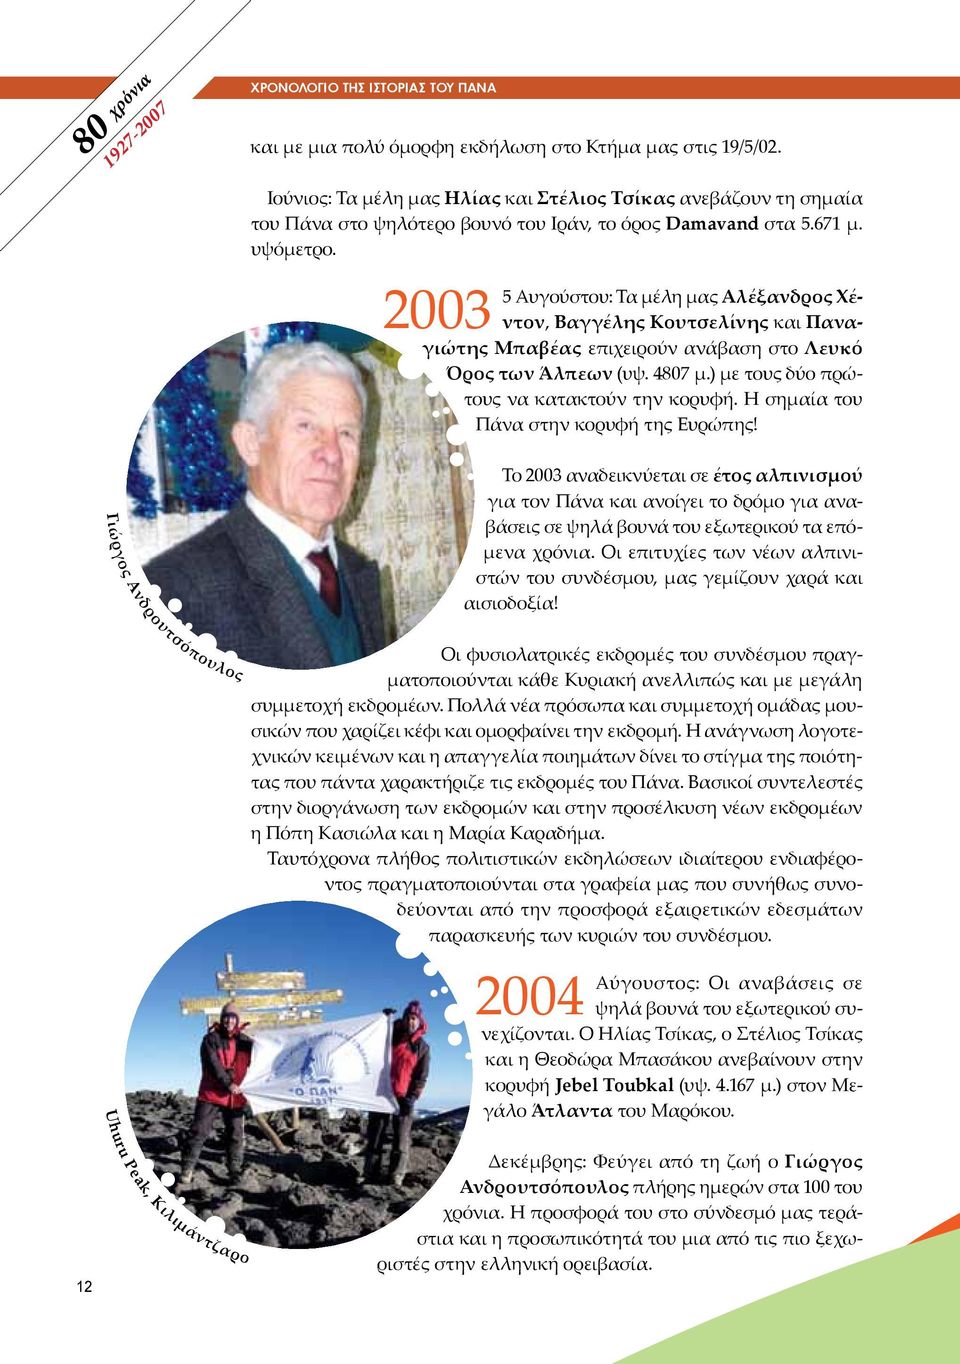 2003 5 Αυγούστου: Τα μέλη μας Αλέξανδρος Χέντον, Βαγγέλης Κουτσελίνης και Παναγιώτης Μπαβέας επιχειρούν ανάβαση στο Λευκό Όρος των Άλπεων (υψ. 4807 μ.) με τους δύο πρώτους να κατακτούν την κορυφή.